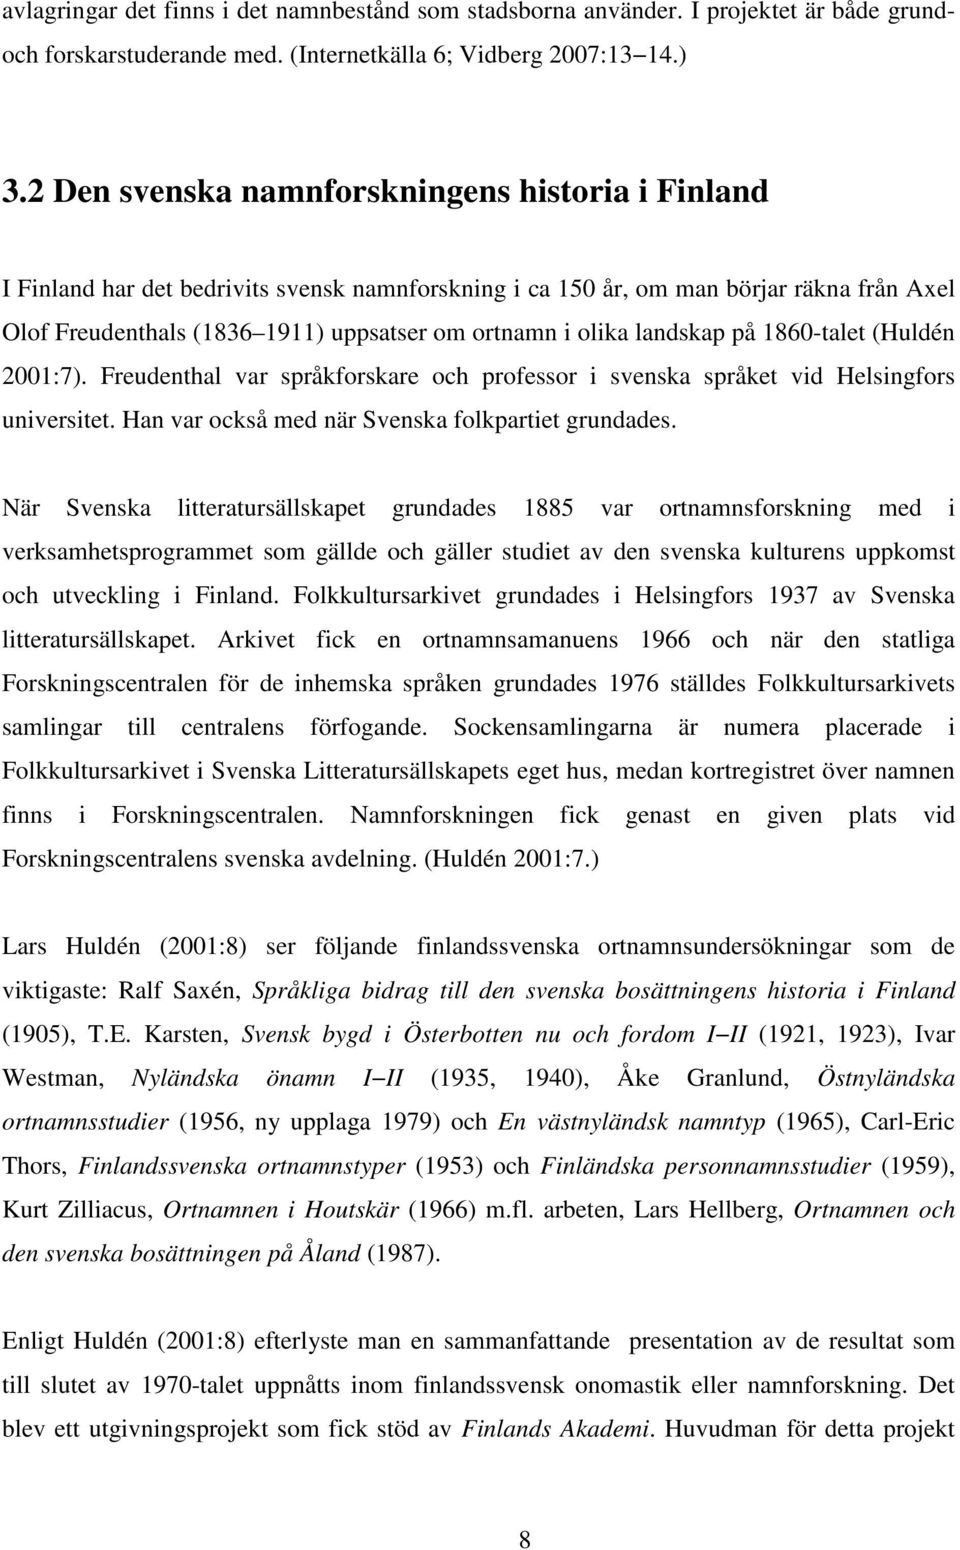 olika landskap på 1860-talet (Huldén 2001:7). Freudenthal var språkforskare och professor i svenska språket vid Helsingfors universitet. Han var också med när Svenska folkpartiet grundades.